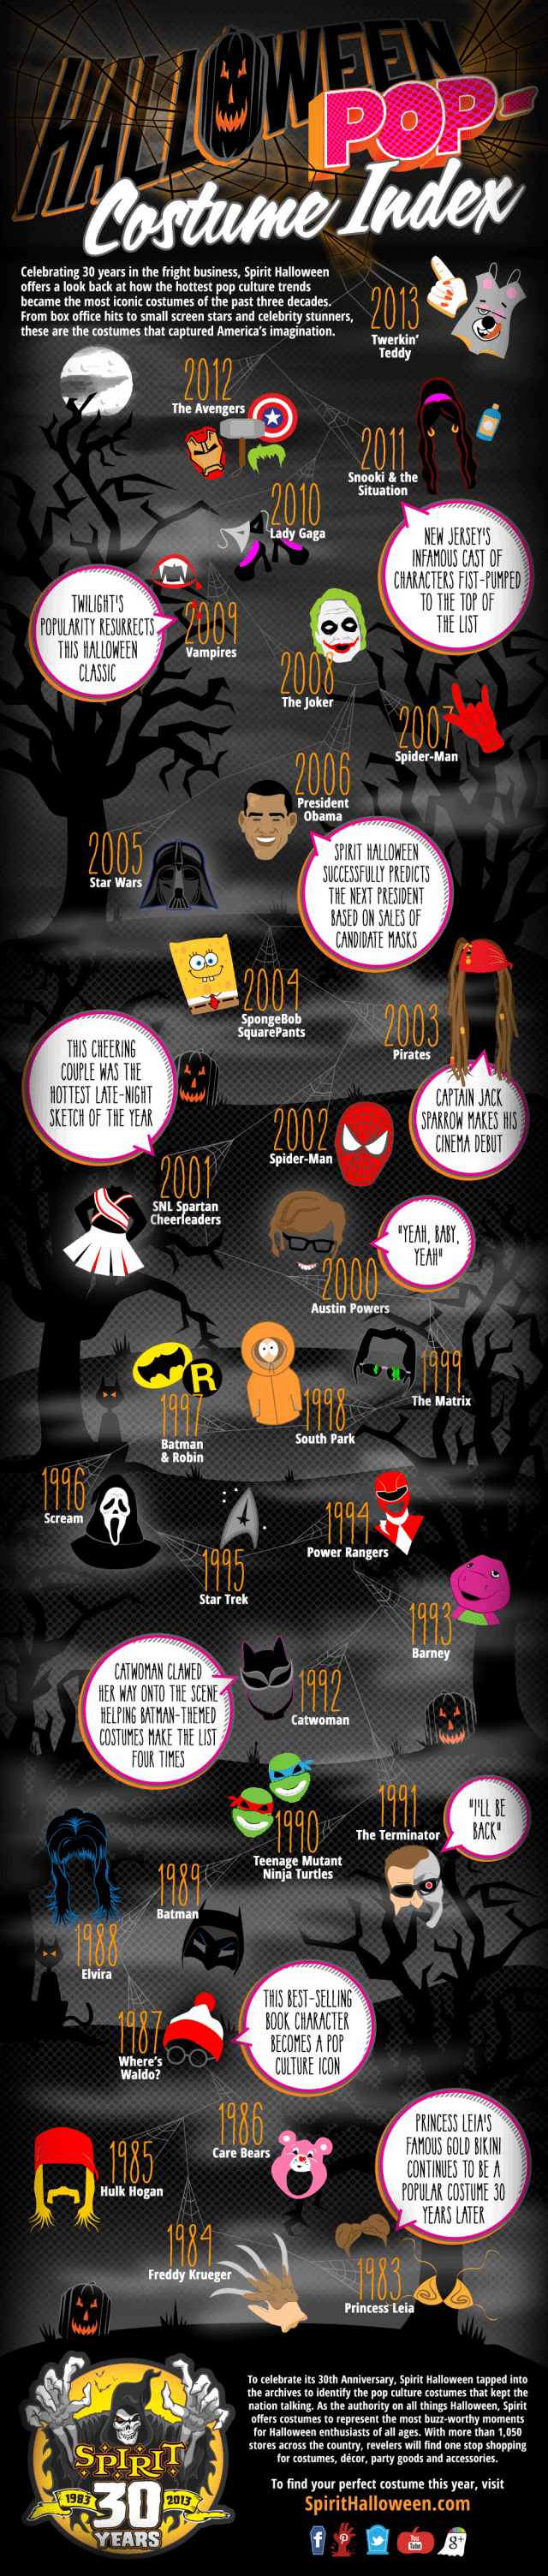 Halloween Pop Costume Index